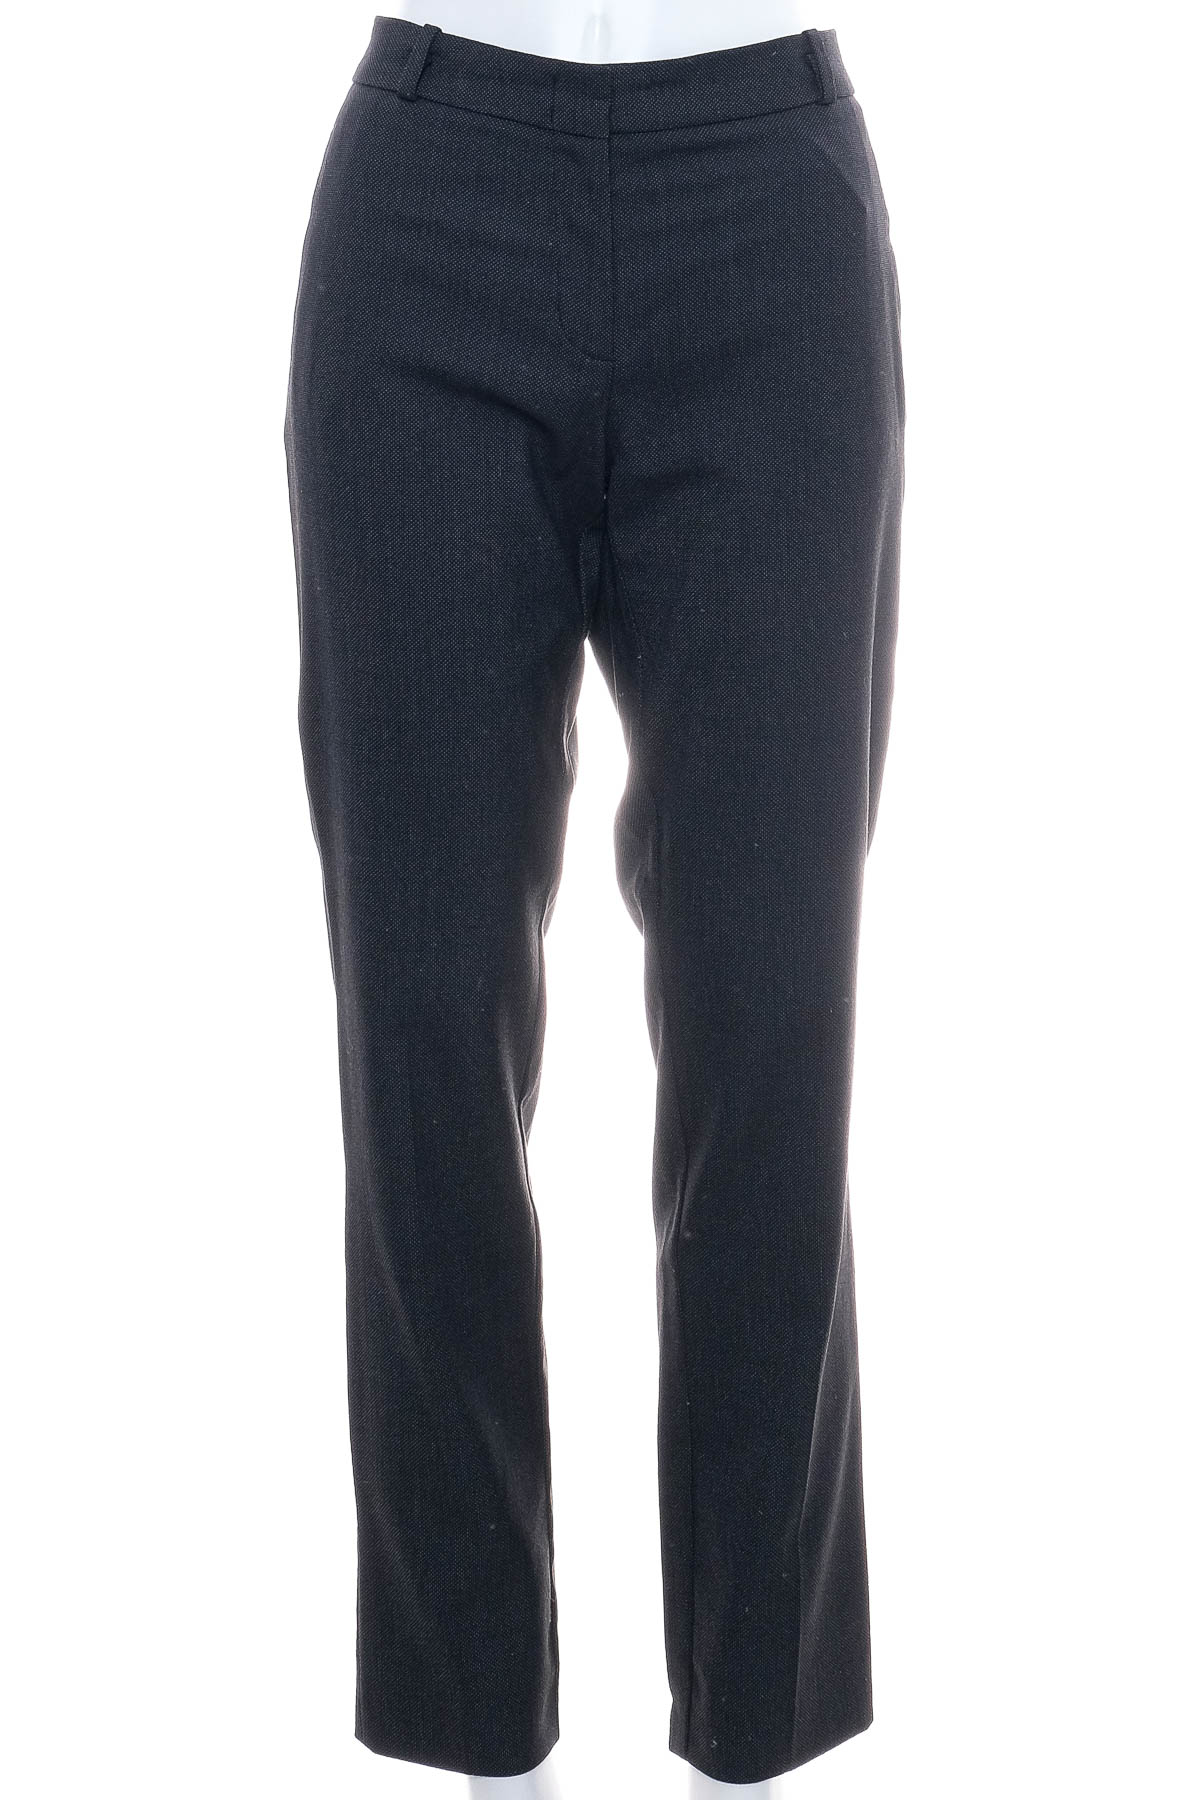 Pantaloni de damă - ESPRIT - 0